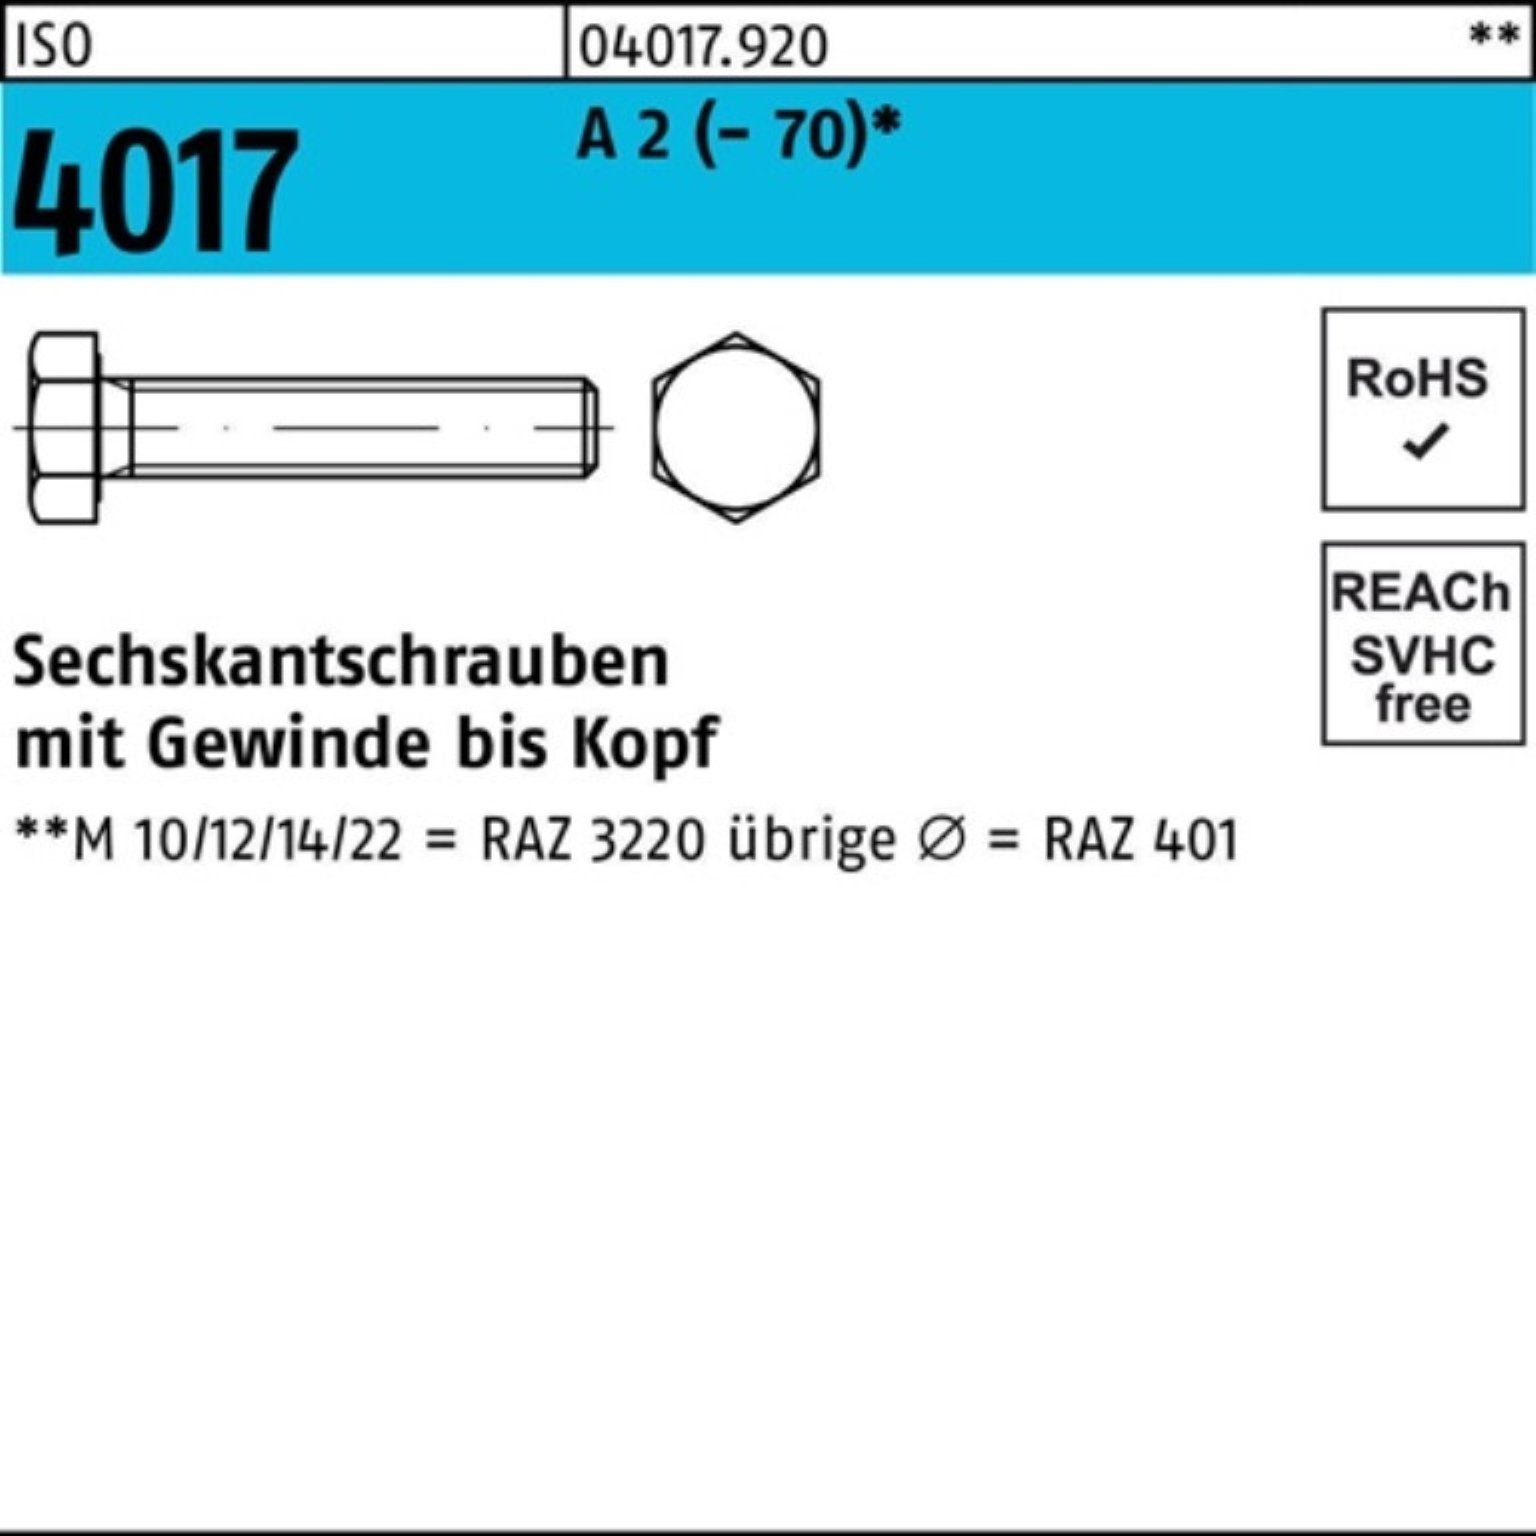 Bufab Sechskantschraube 100er Pack (70) A Stück 100 12 4017 2 M8x ISO Sechskantschraube VG